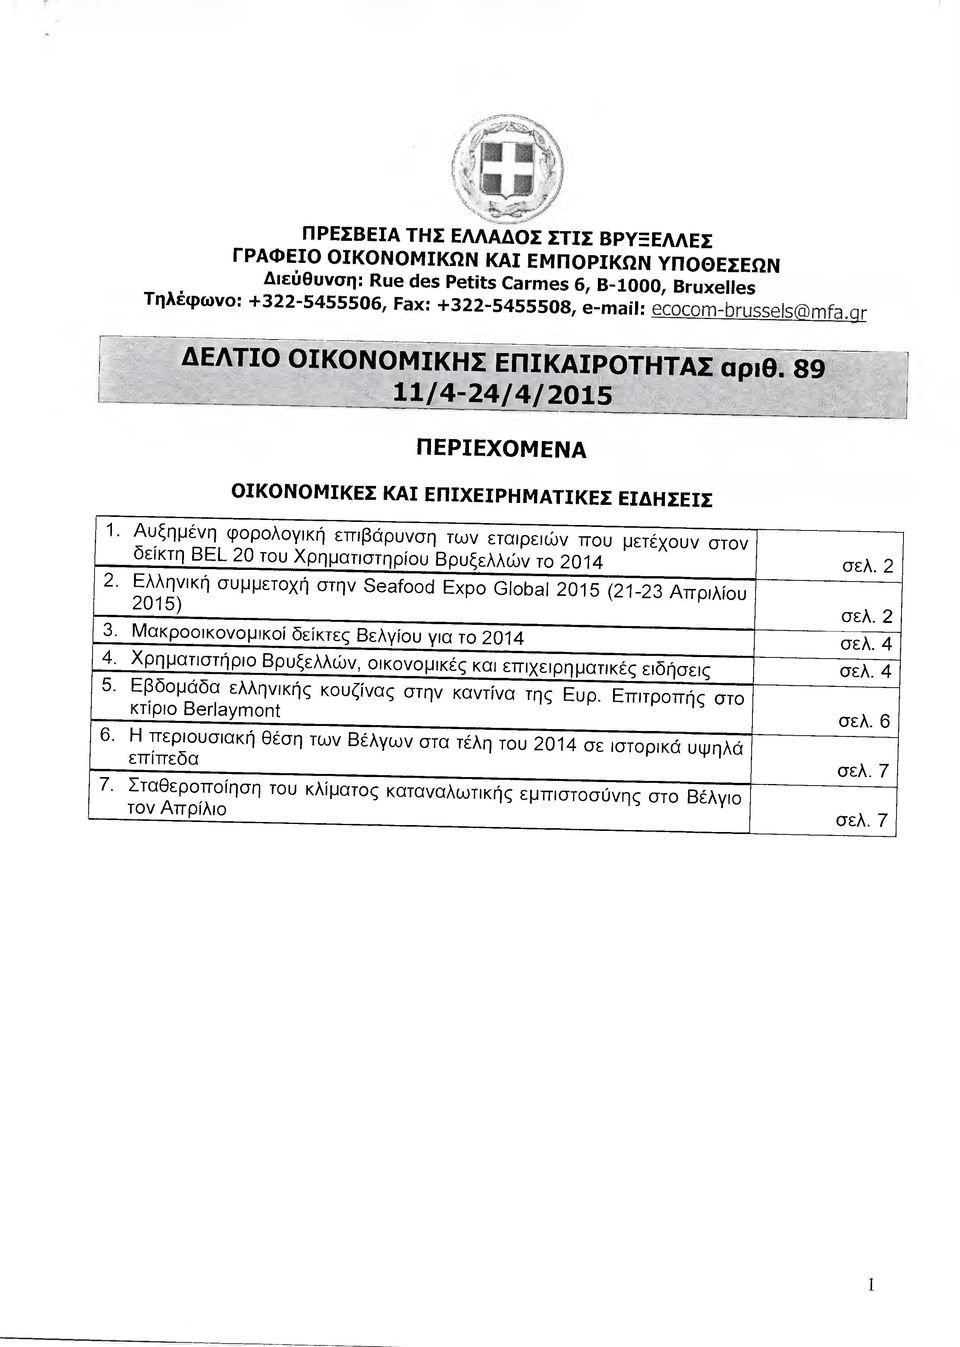 Αυξηµένη φορολογική επιβάρυνση των εταιρειών που µετέχουν στον δείκτη ΒΕΙ 20 του Χρηµατιστηρίου Βρυξελλών το 2014 2. Ελληνική συµµετοχή στην Seafood Εχρο Global 2015 (21-23 Απριλίου 2015) 3.